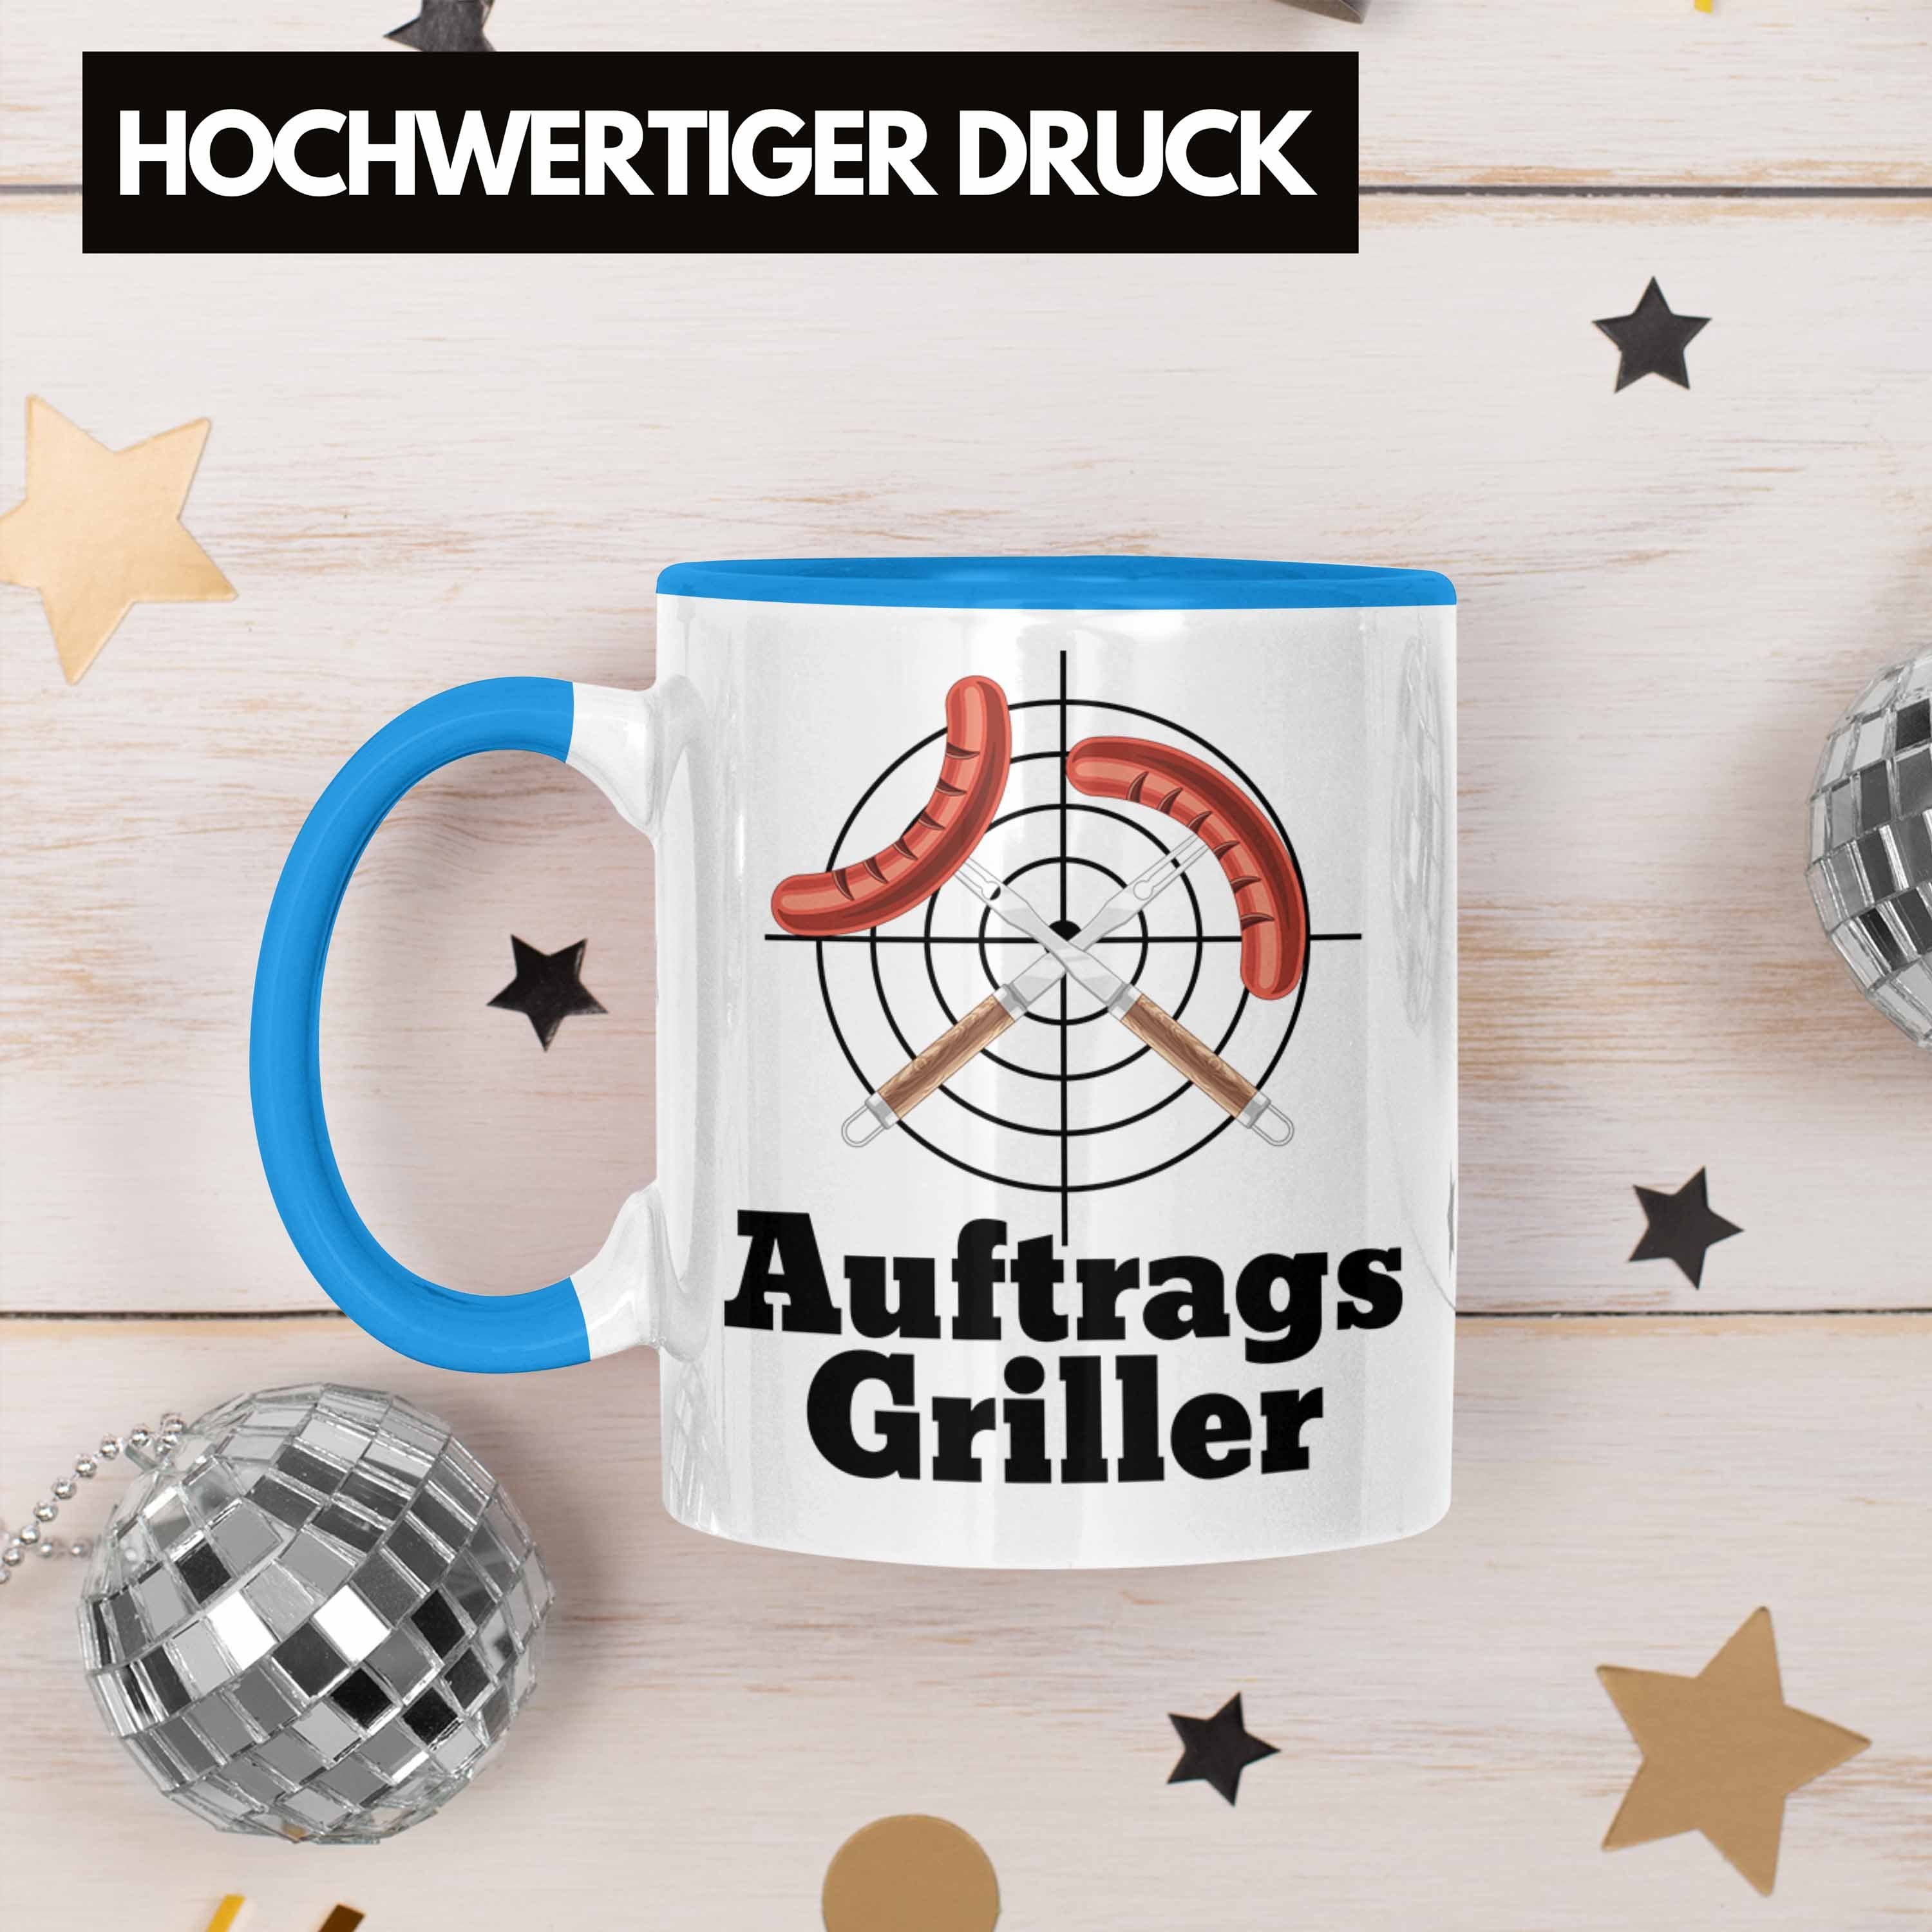 Männer Blau Geschenk Auftrags-Griller Trendation Tasse Kaffee-Becher Gril Tasse Grillmeister